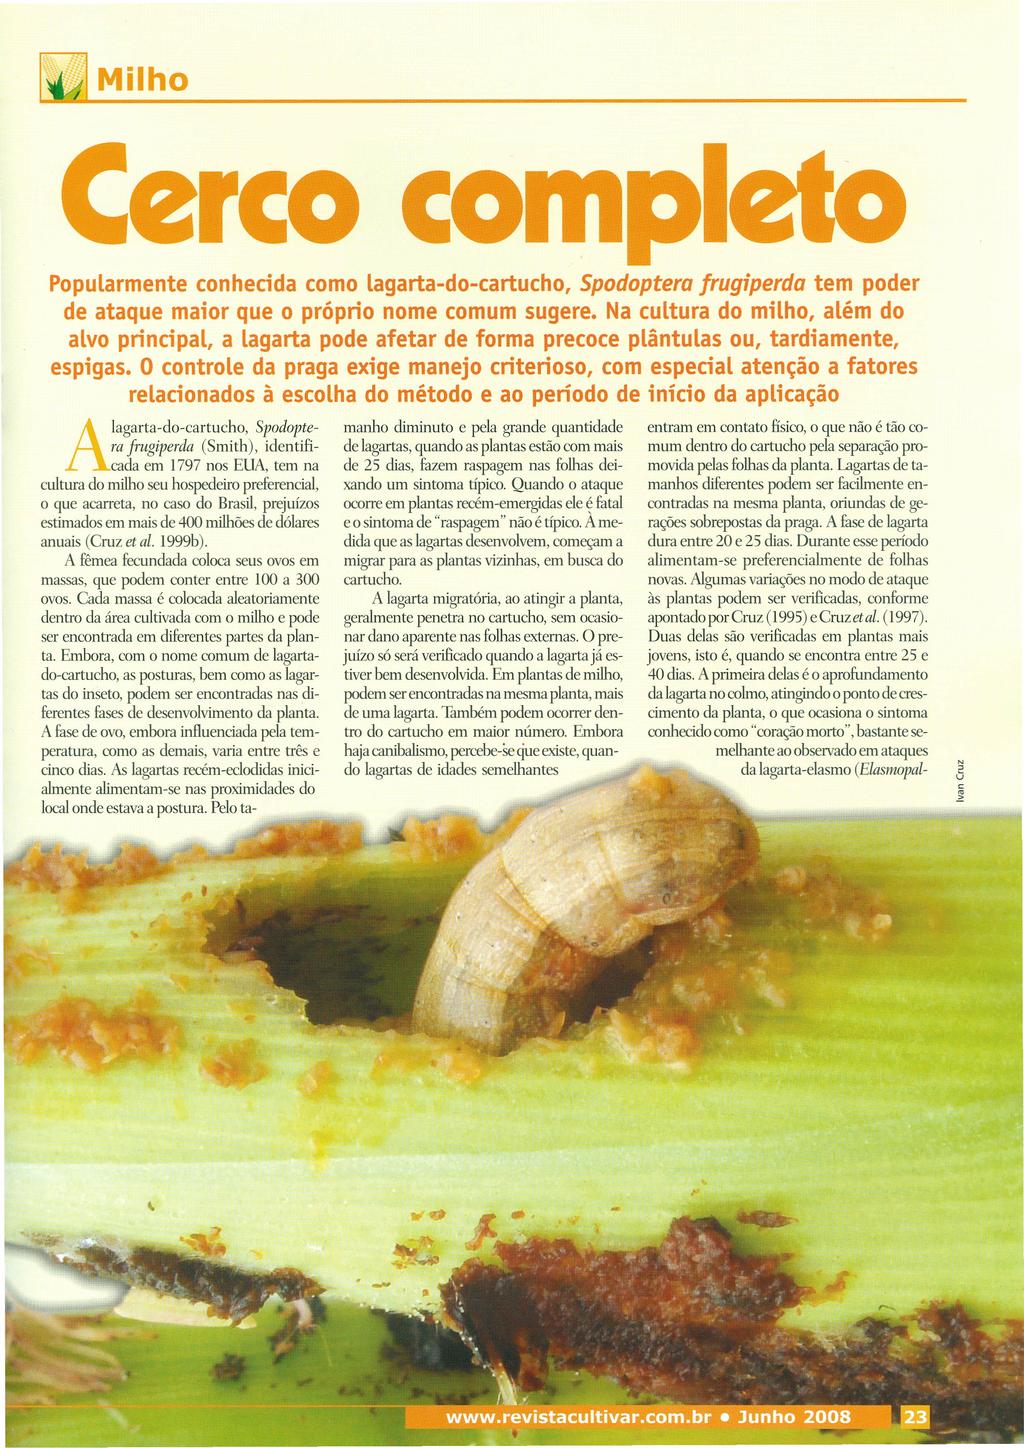 Milho Cerco compl Popularmente conhecida como lagarta-do-cartucho, Spodoptera frugiperda tem poder de ataque maior que o próprio nome comum sugere.